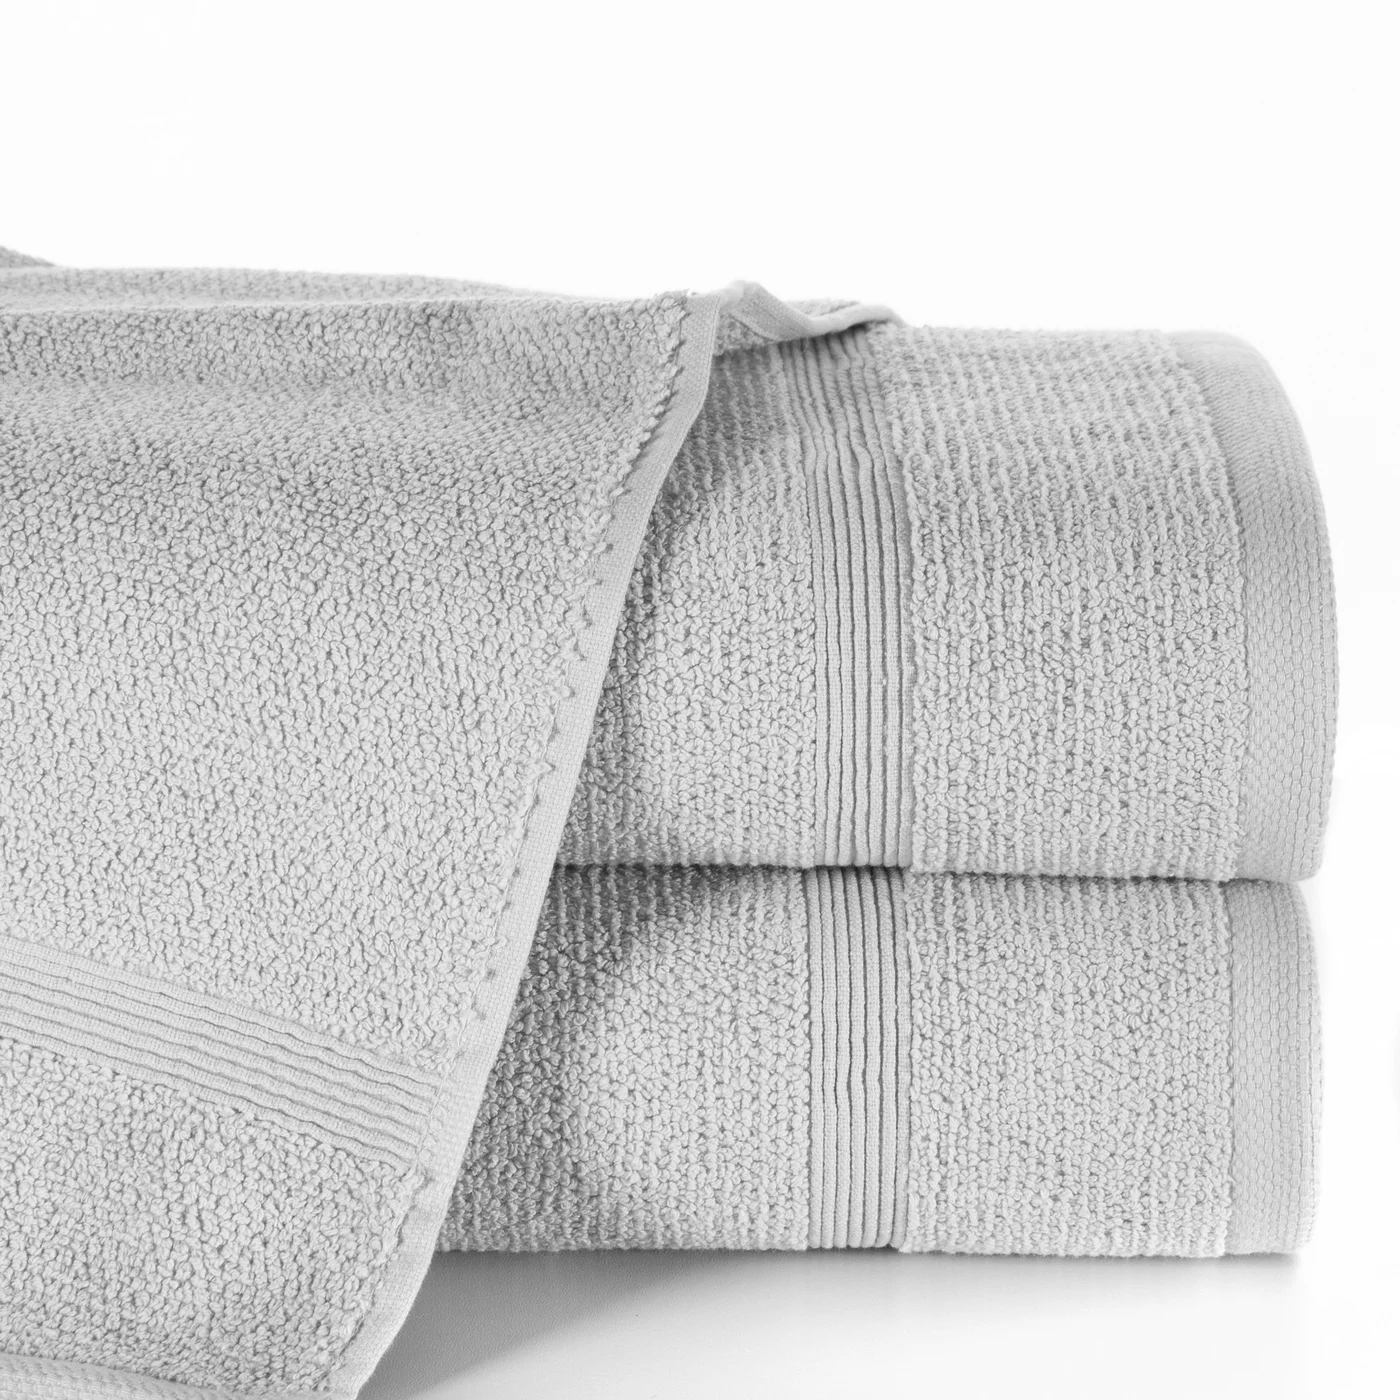 Ręcznik klasyczny o charakterystycznym splocie